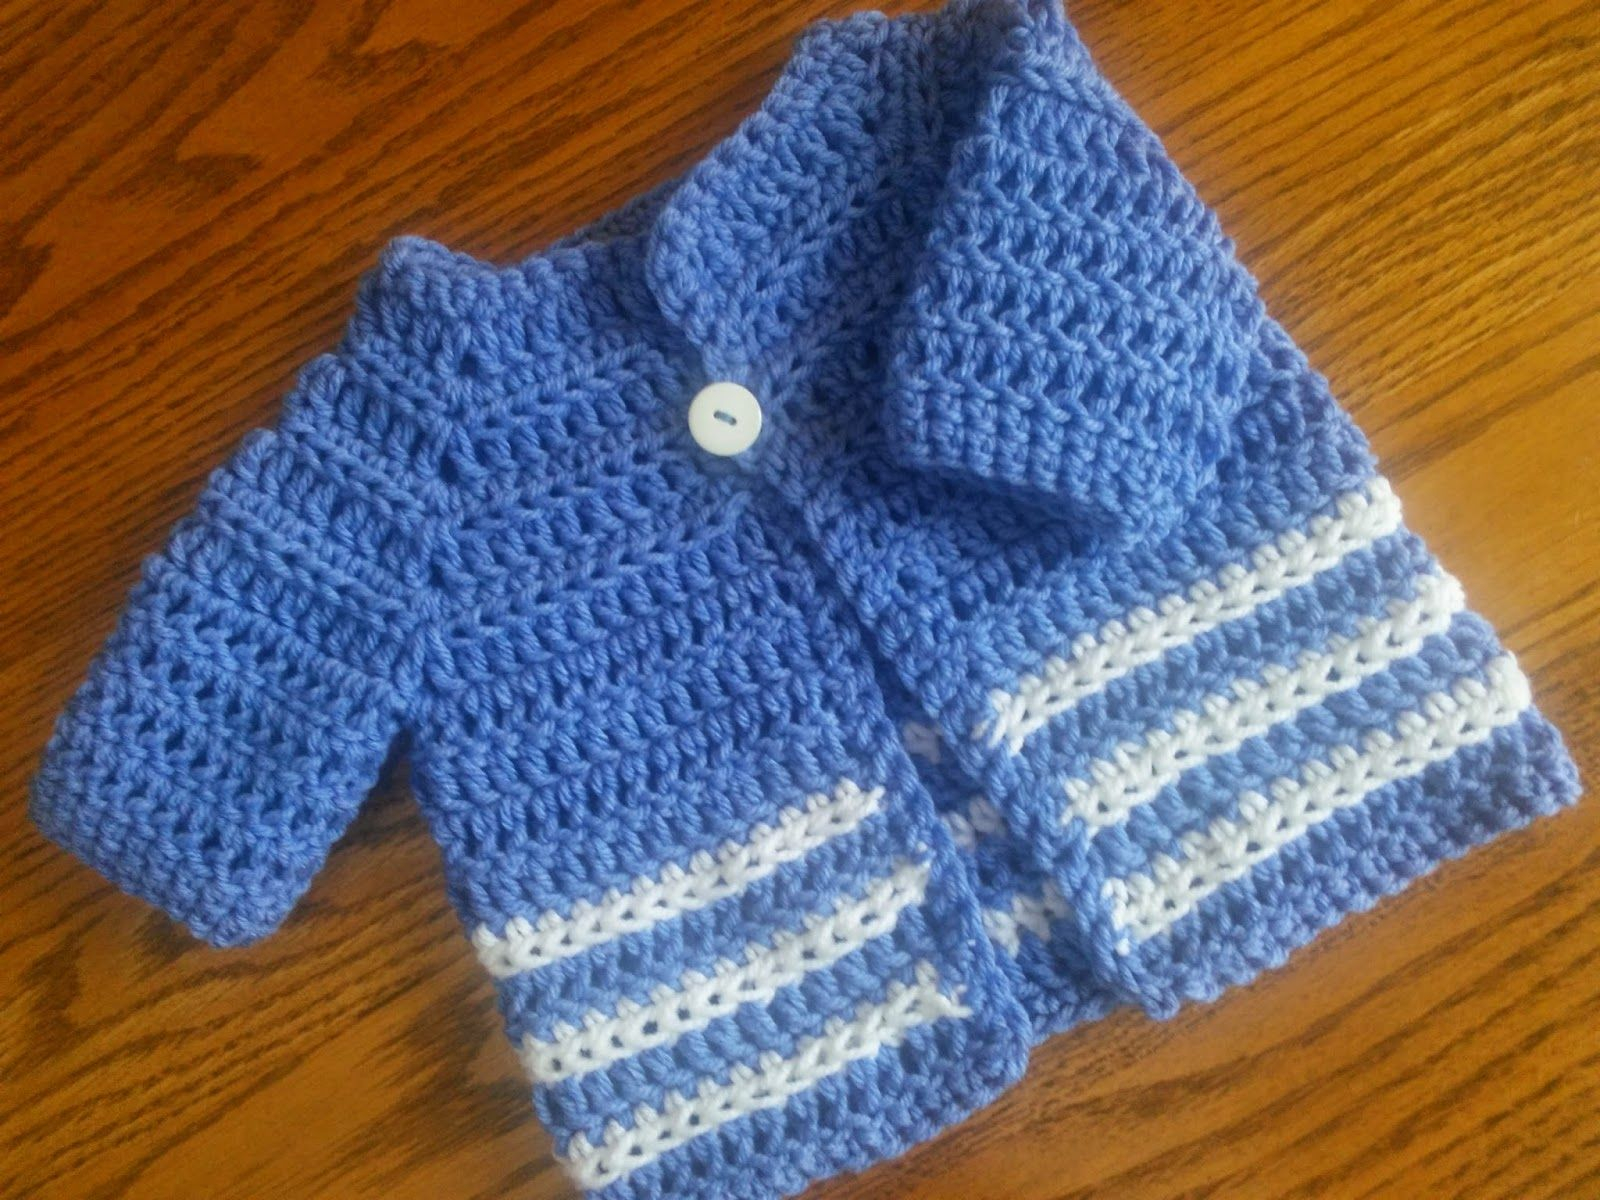 Crochet Baby Boy Sweater Pattern Free Ba Boy Sweater Crochet Pattern Easy Crochet And Other Craftys